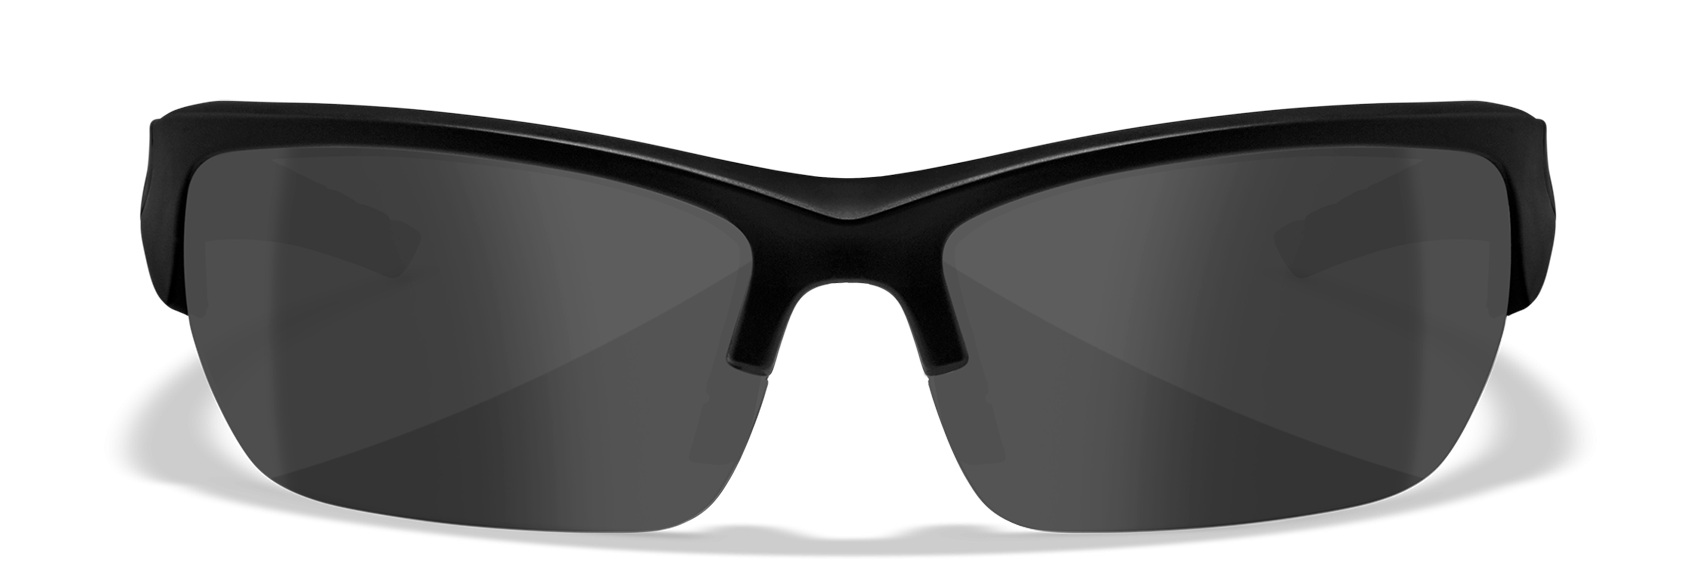 Wiley X WX Valor Matte Black Polycarbonate Sunglasses